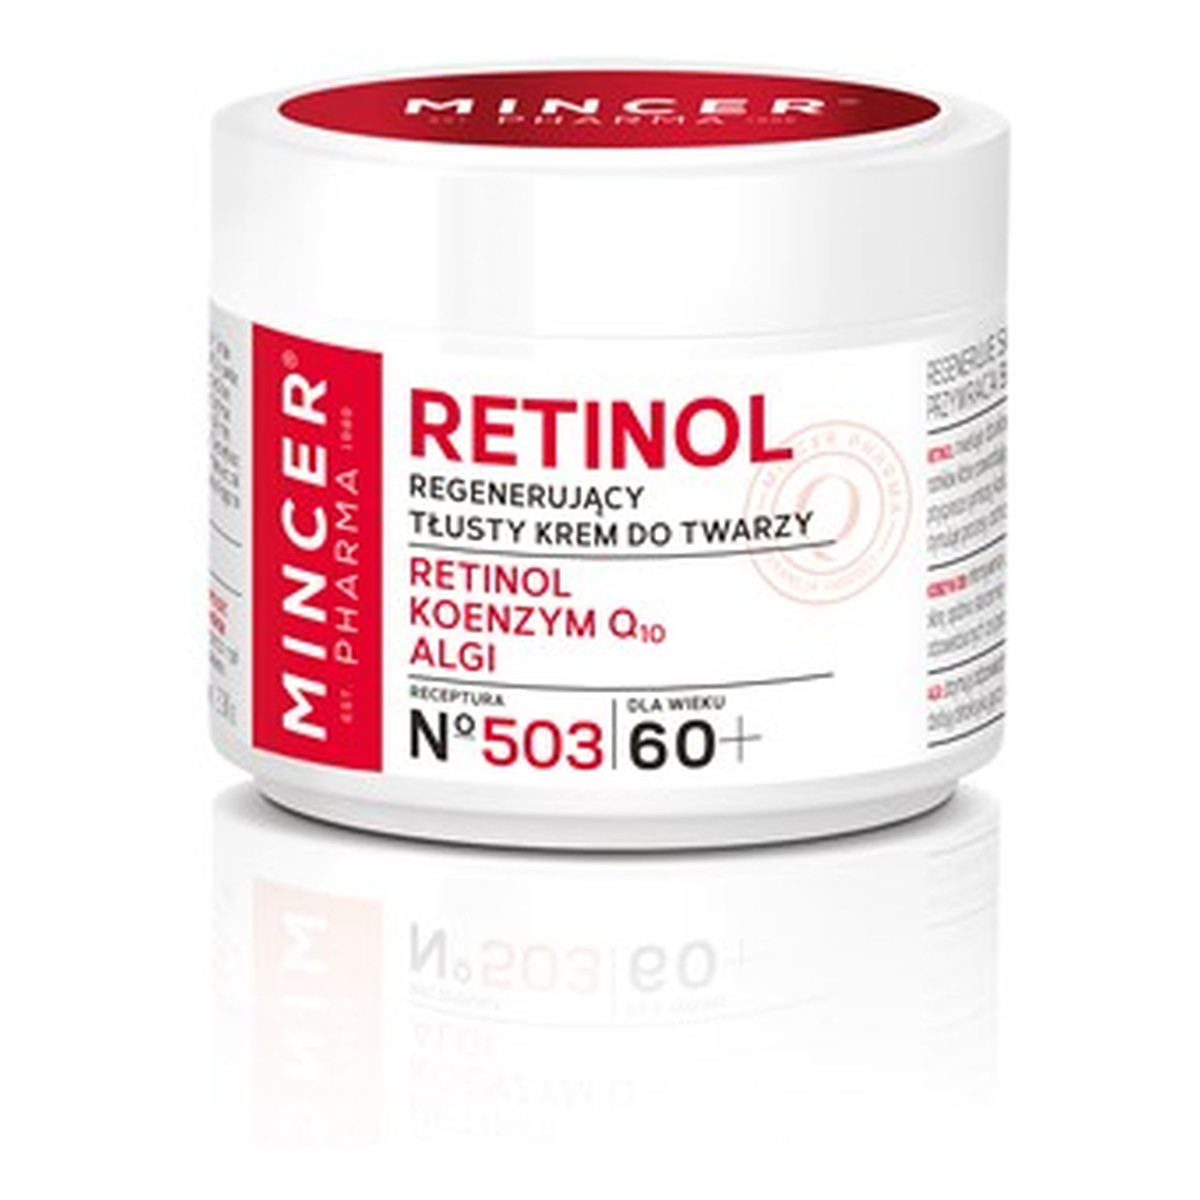 Mincer Pharma Retinol 60+ Regenerujący Tłusty Krem Do Twarzy No 503 50ml